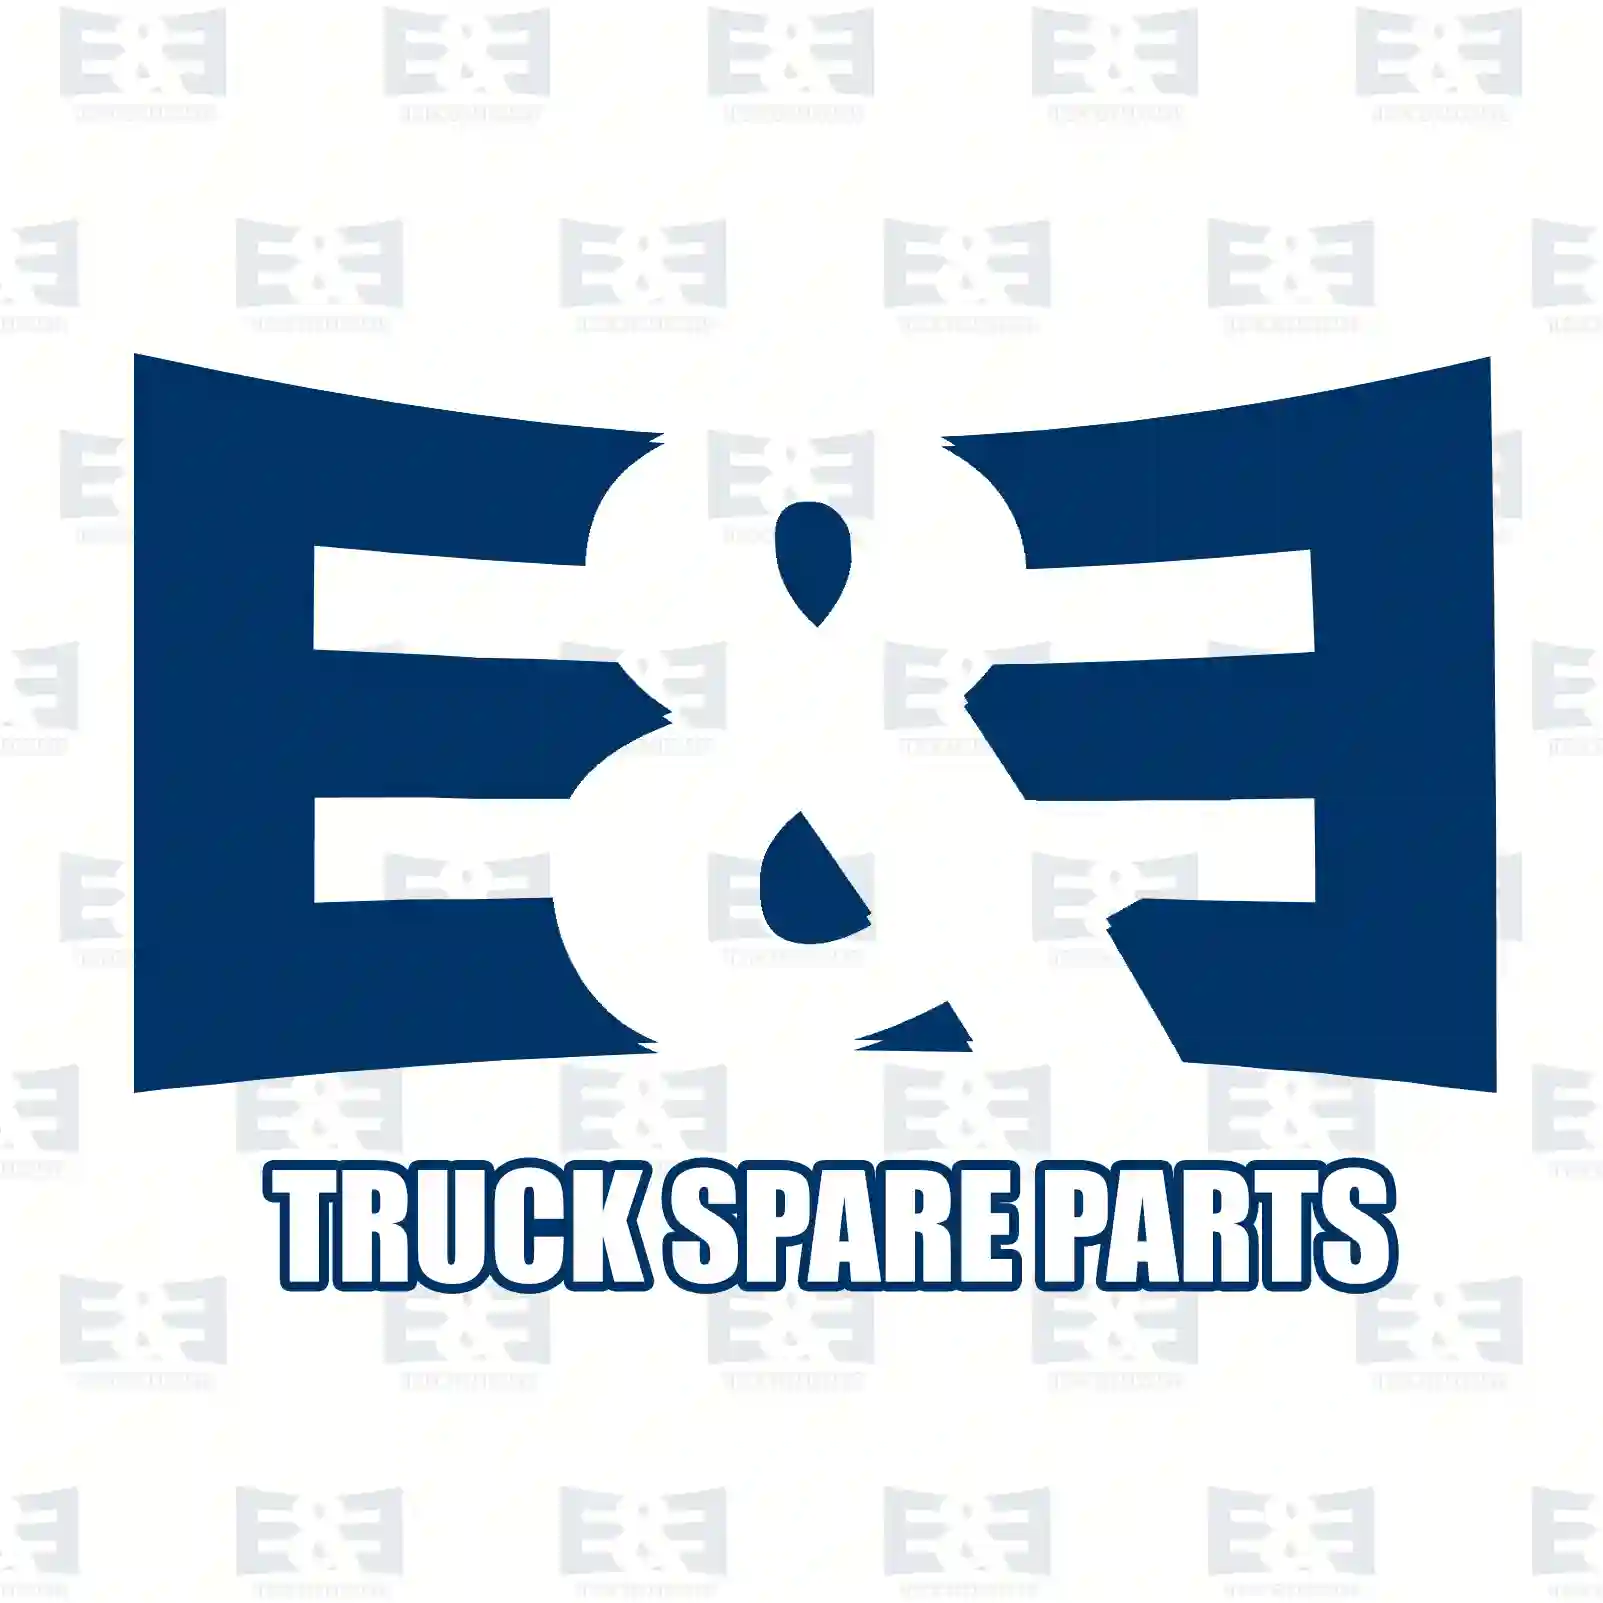  4 Circuit Protection Valve 4-circuit-protection valve, EE No 2E2294760 ,  oem no:0644243, 0644243R, 0661690, 0661690R, 644243, 644243A, 644243R, 661690, 661690A, 661690R, 04771458, 42008282, 500005444, 61599534, 9900005127AA E&E Truck Spare Parts | Truck Spare Parts, Auotomotive Spare Parts